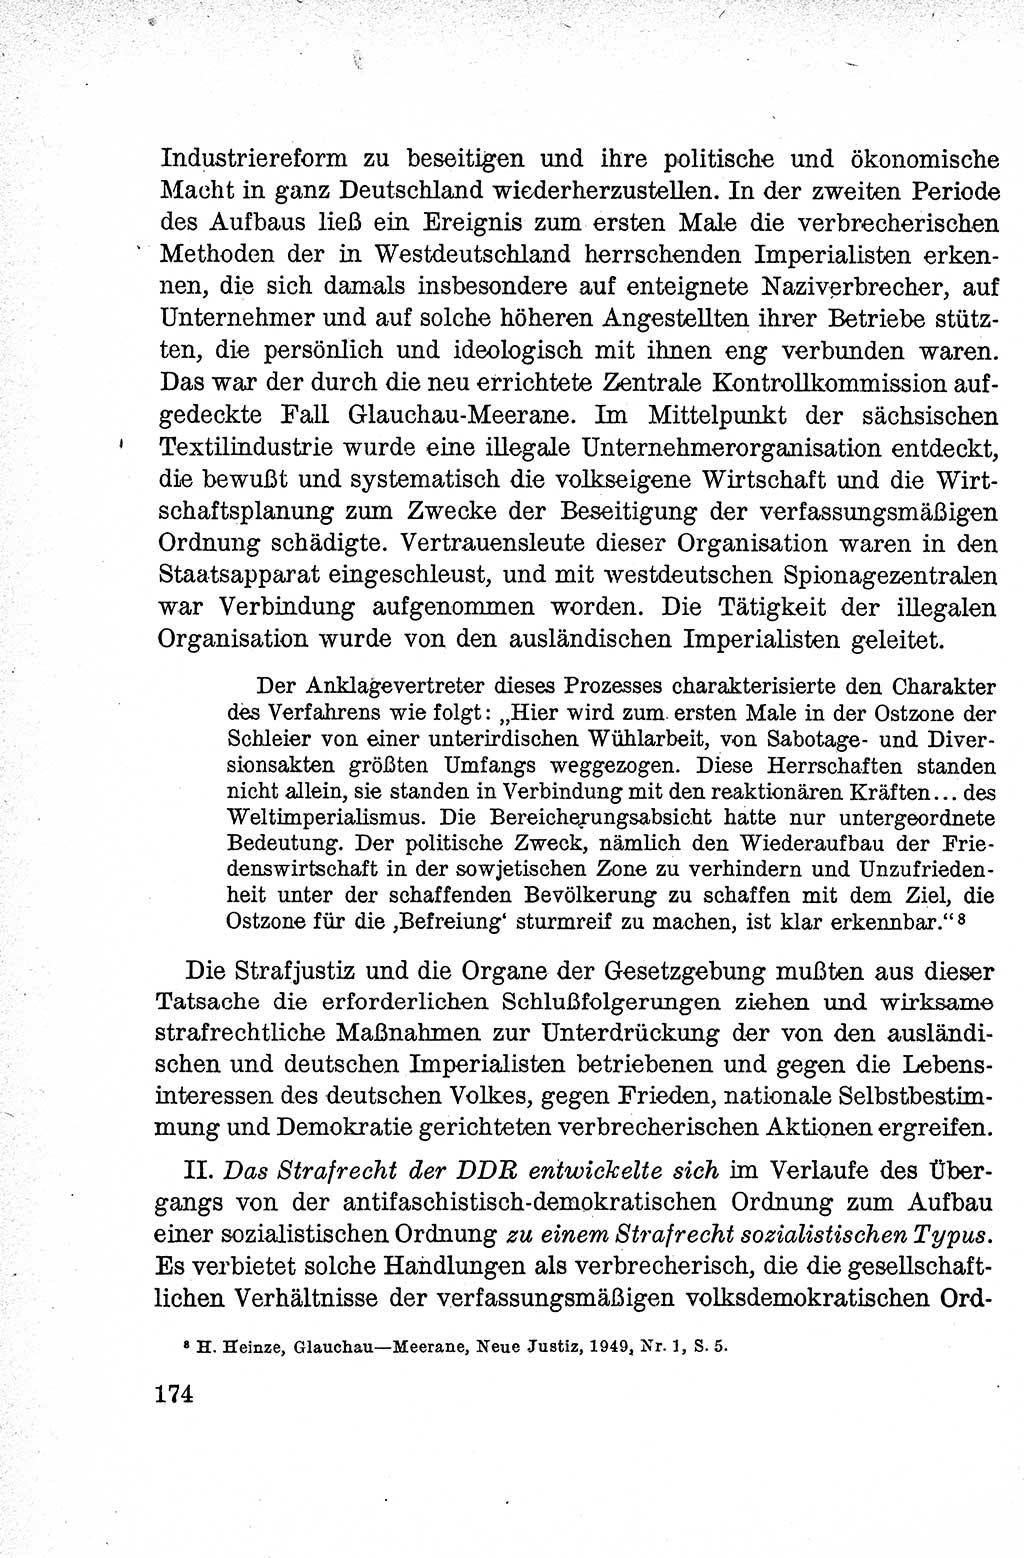 Lehrbuch des Strafrechts der Deutschen Demokratischen Republik (DDR), Allgemeiner Teil 1959, Seite 174 (Lb. Strafr. DDR AT 1959, S. 174)